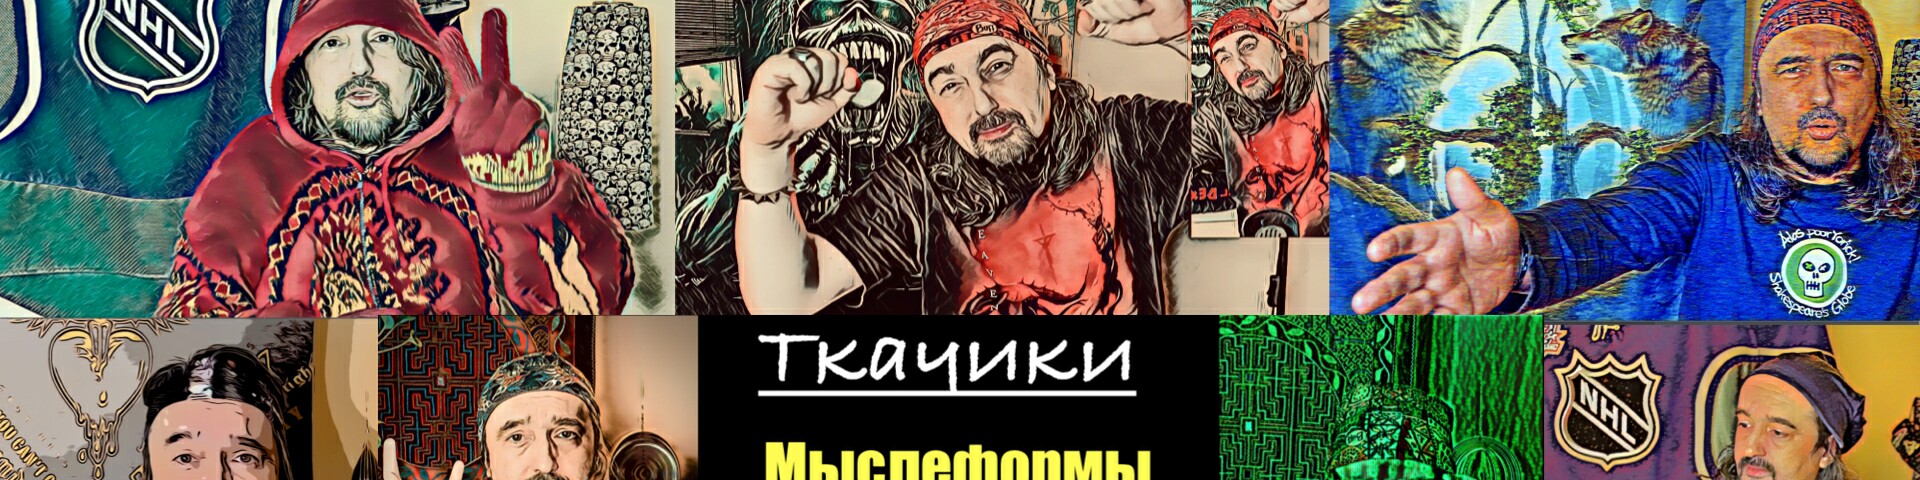 обложка автора Александр Ткачев